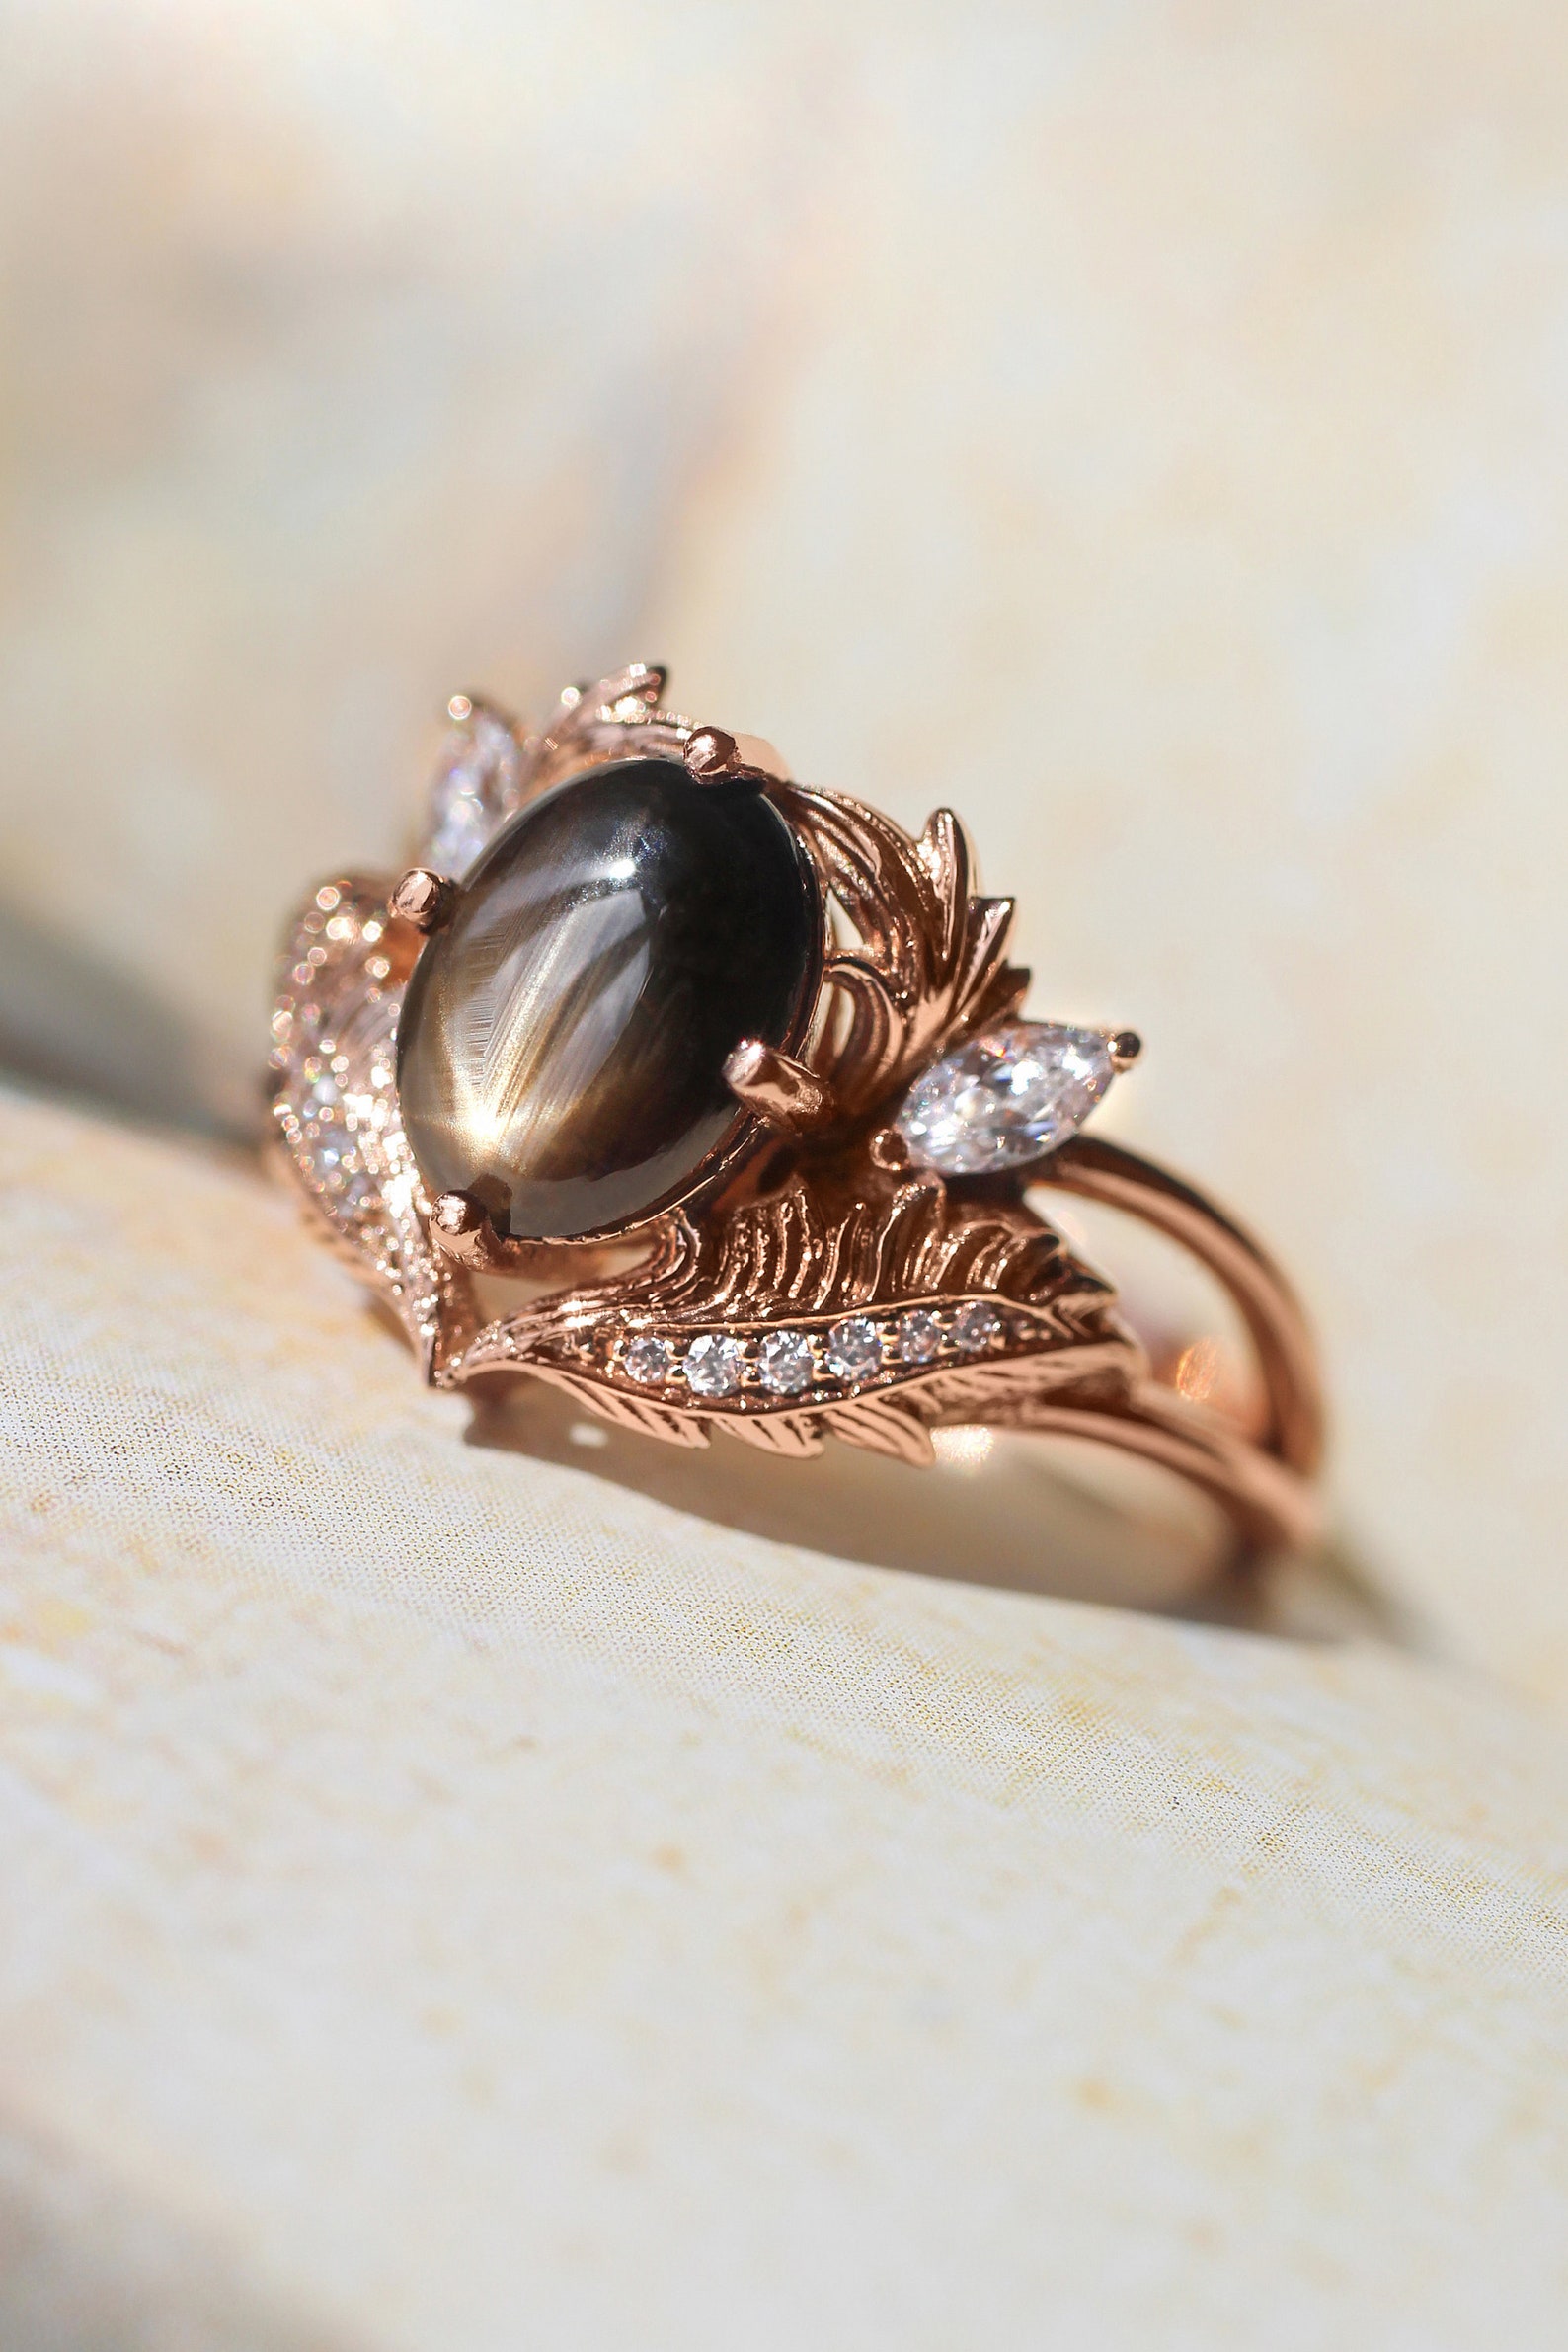 Black Star Sapphire Engagement Ring Leaves Ring Moissanite - Etsy